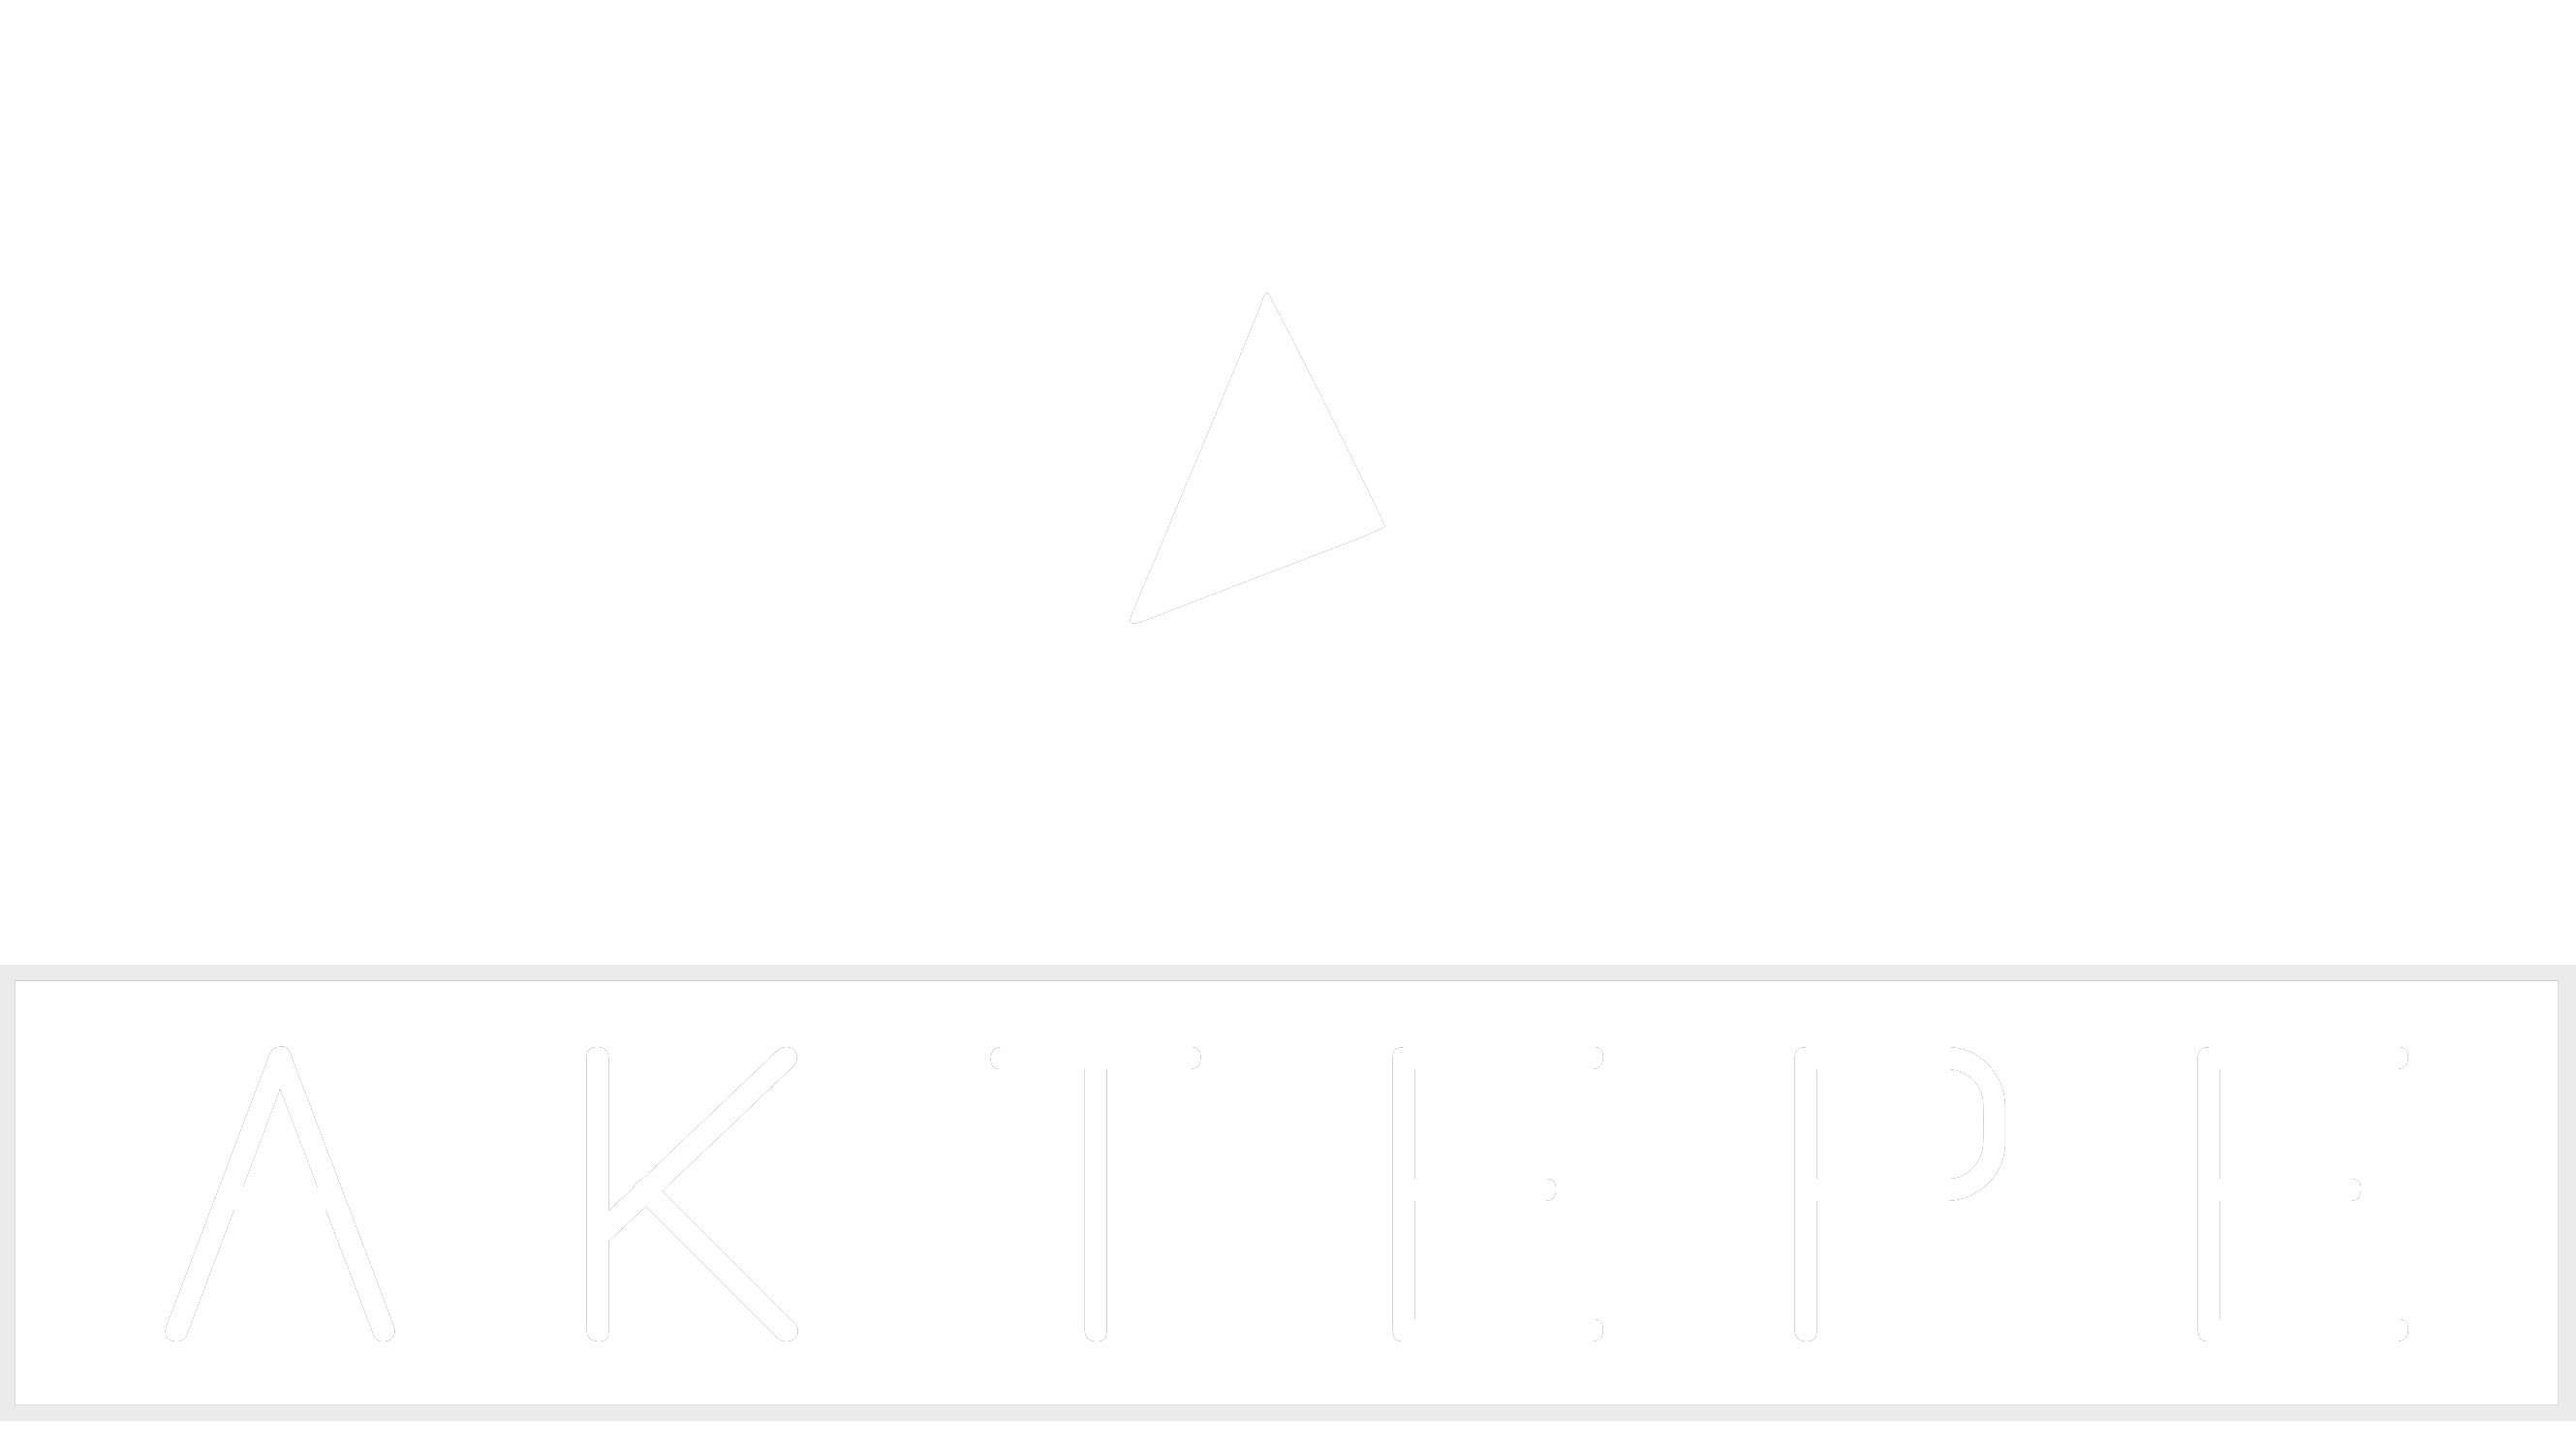 Audi - Aktepe Shop - Oto Müzik Görüntü Navigasyon Sistemleri ve Teyp Çerçevesi Satış Merkezi